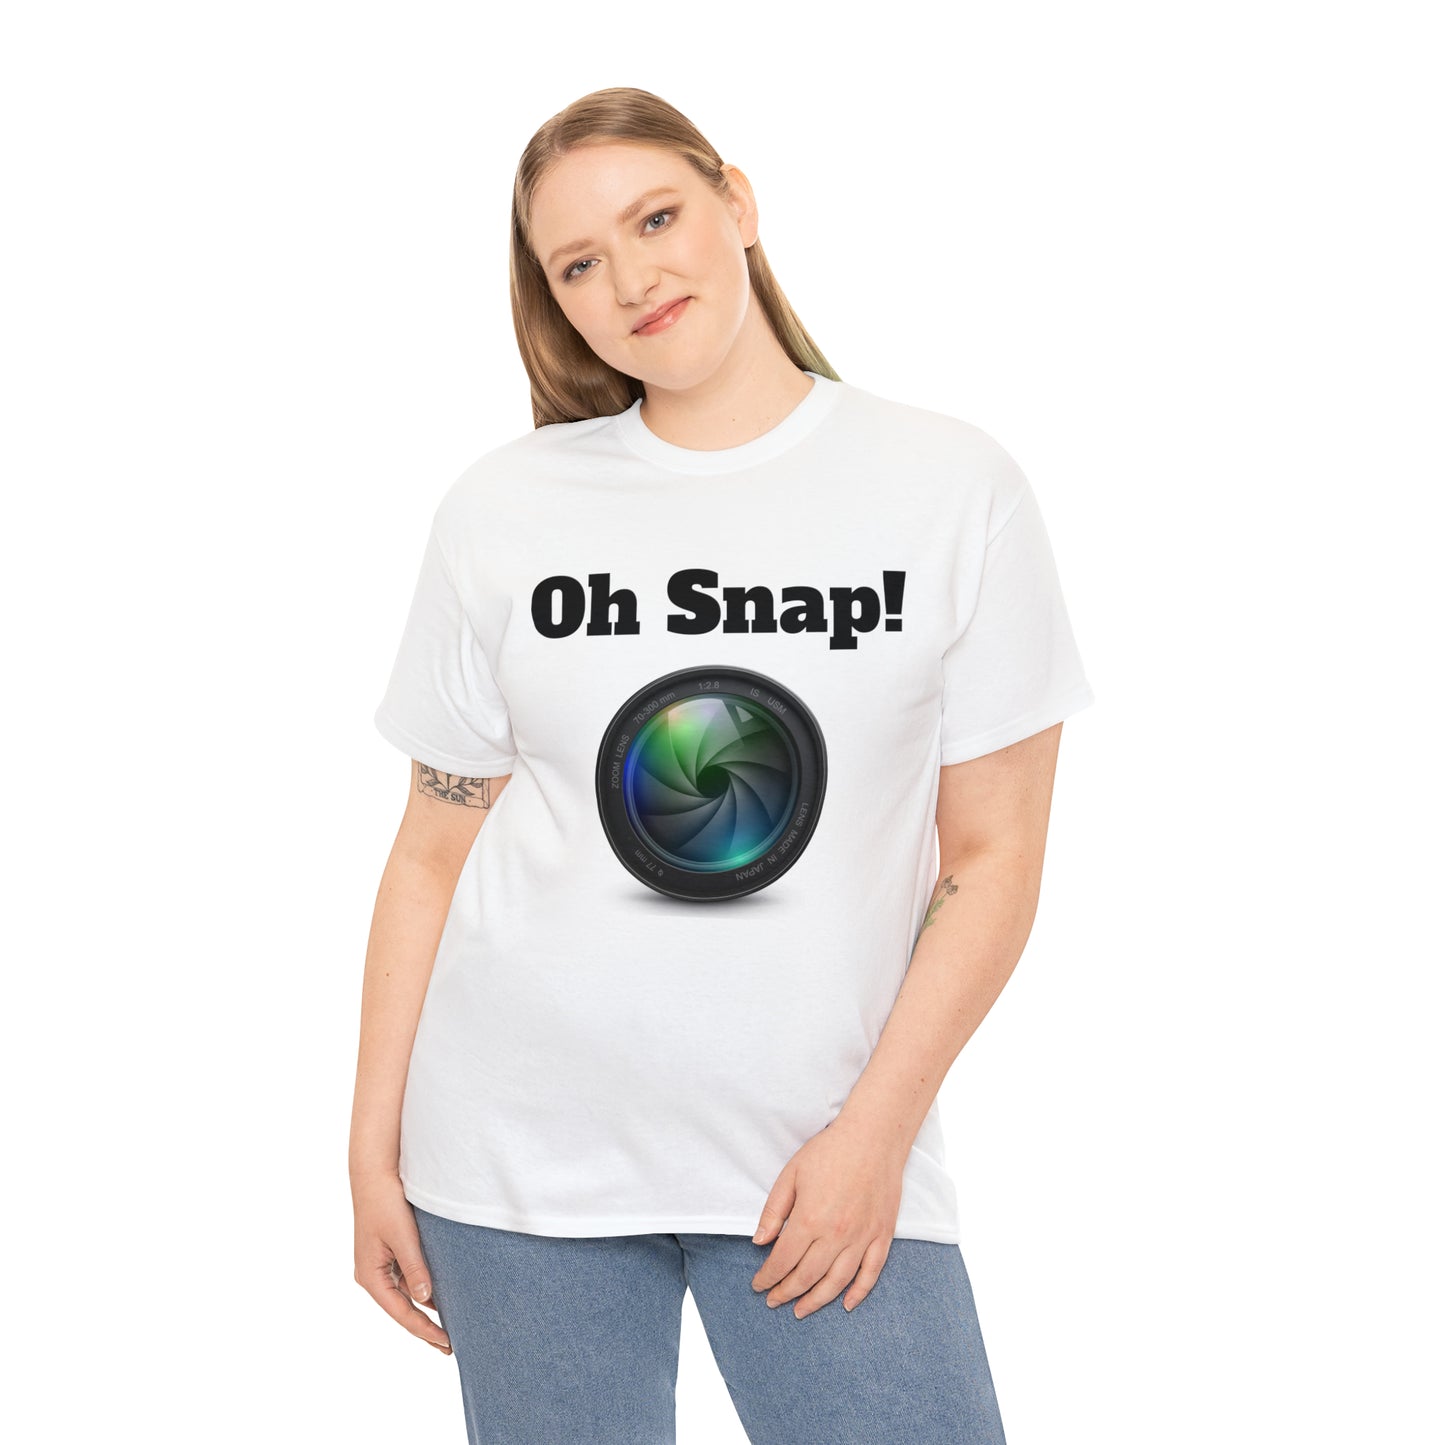 Oh Snap! T-shirt